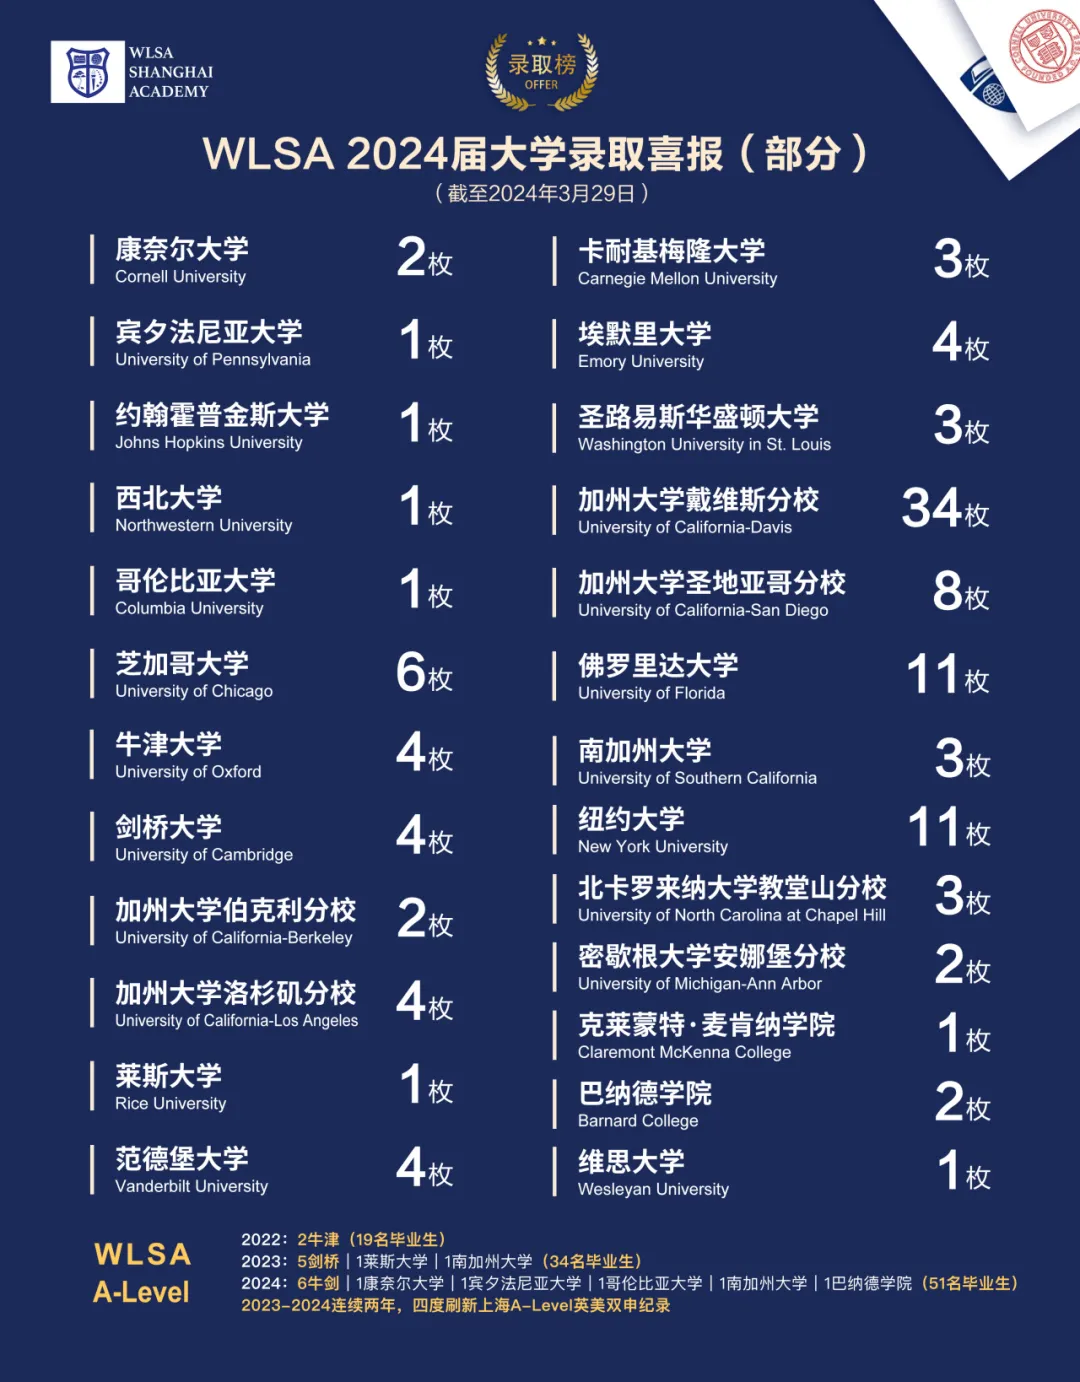 WLSA上海学校2024届大学录取喜报(部分)